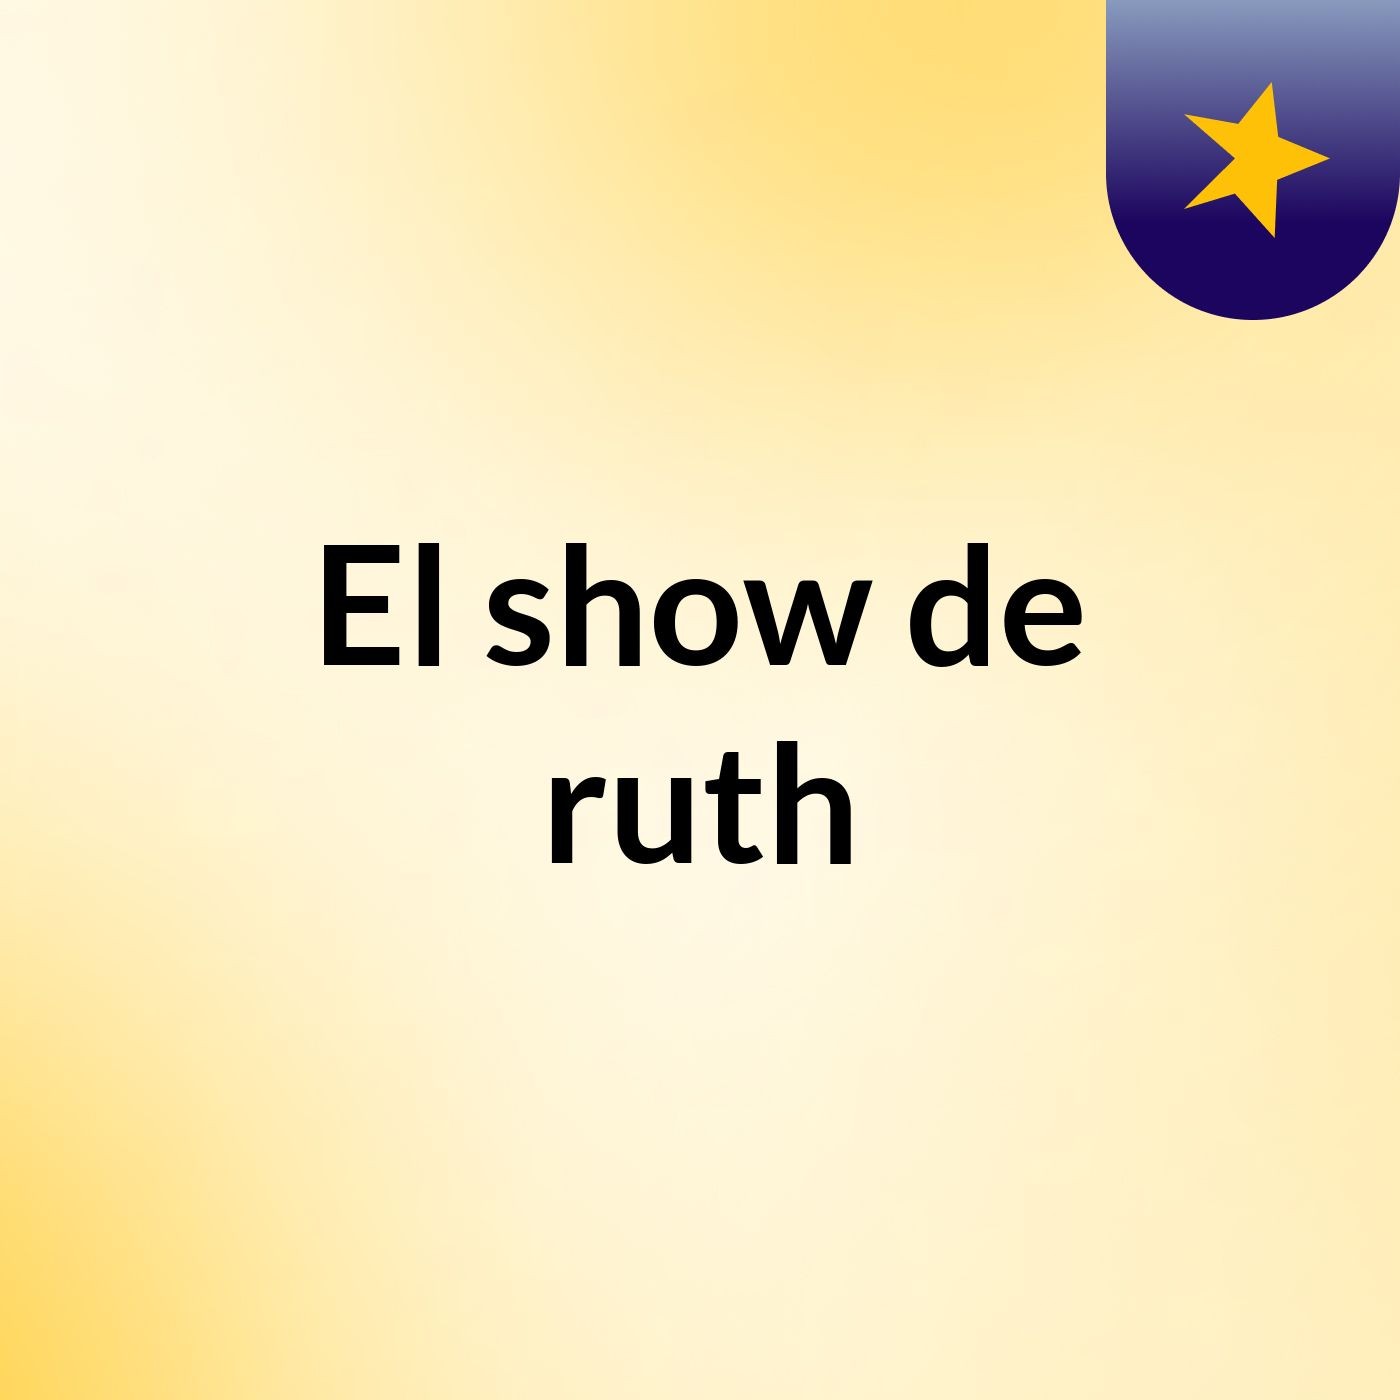 El show de ruth